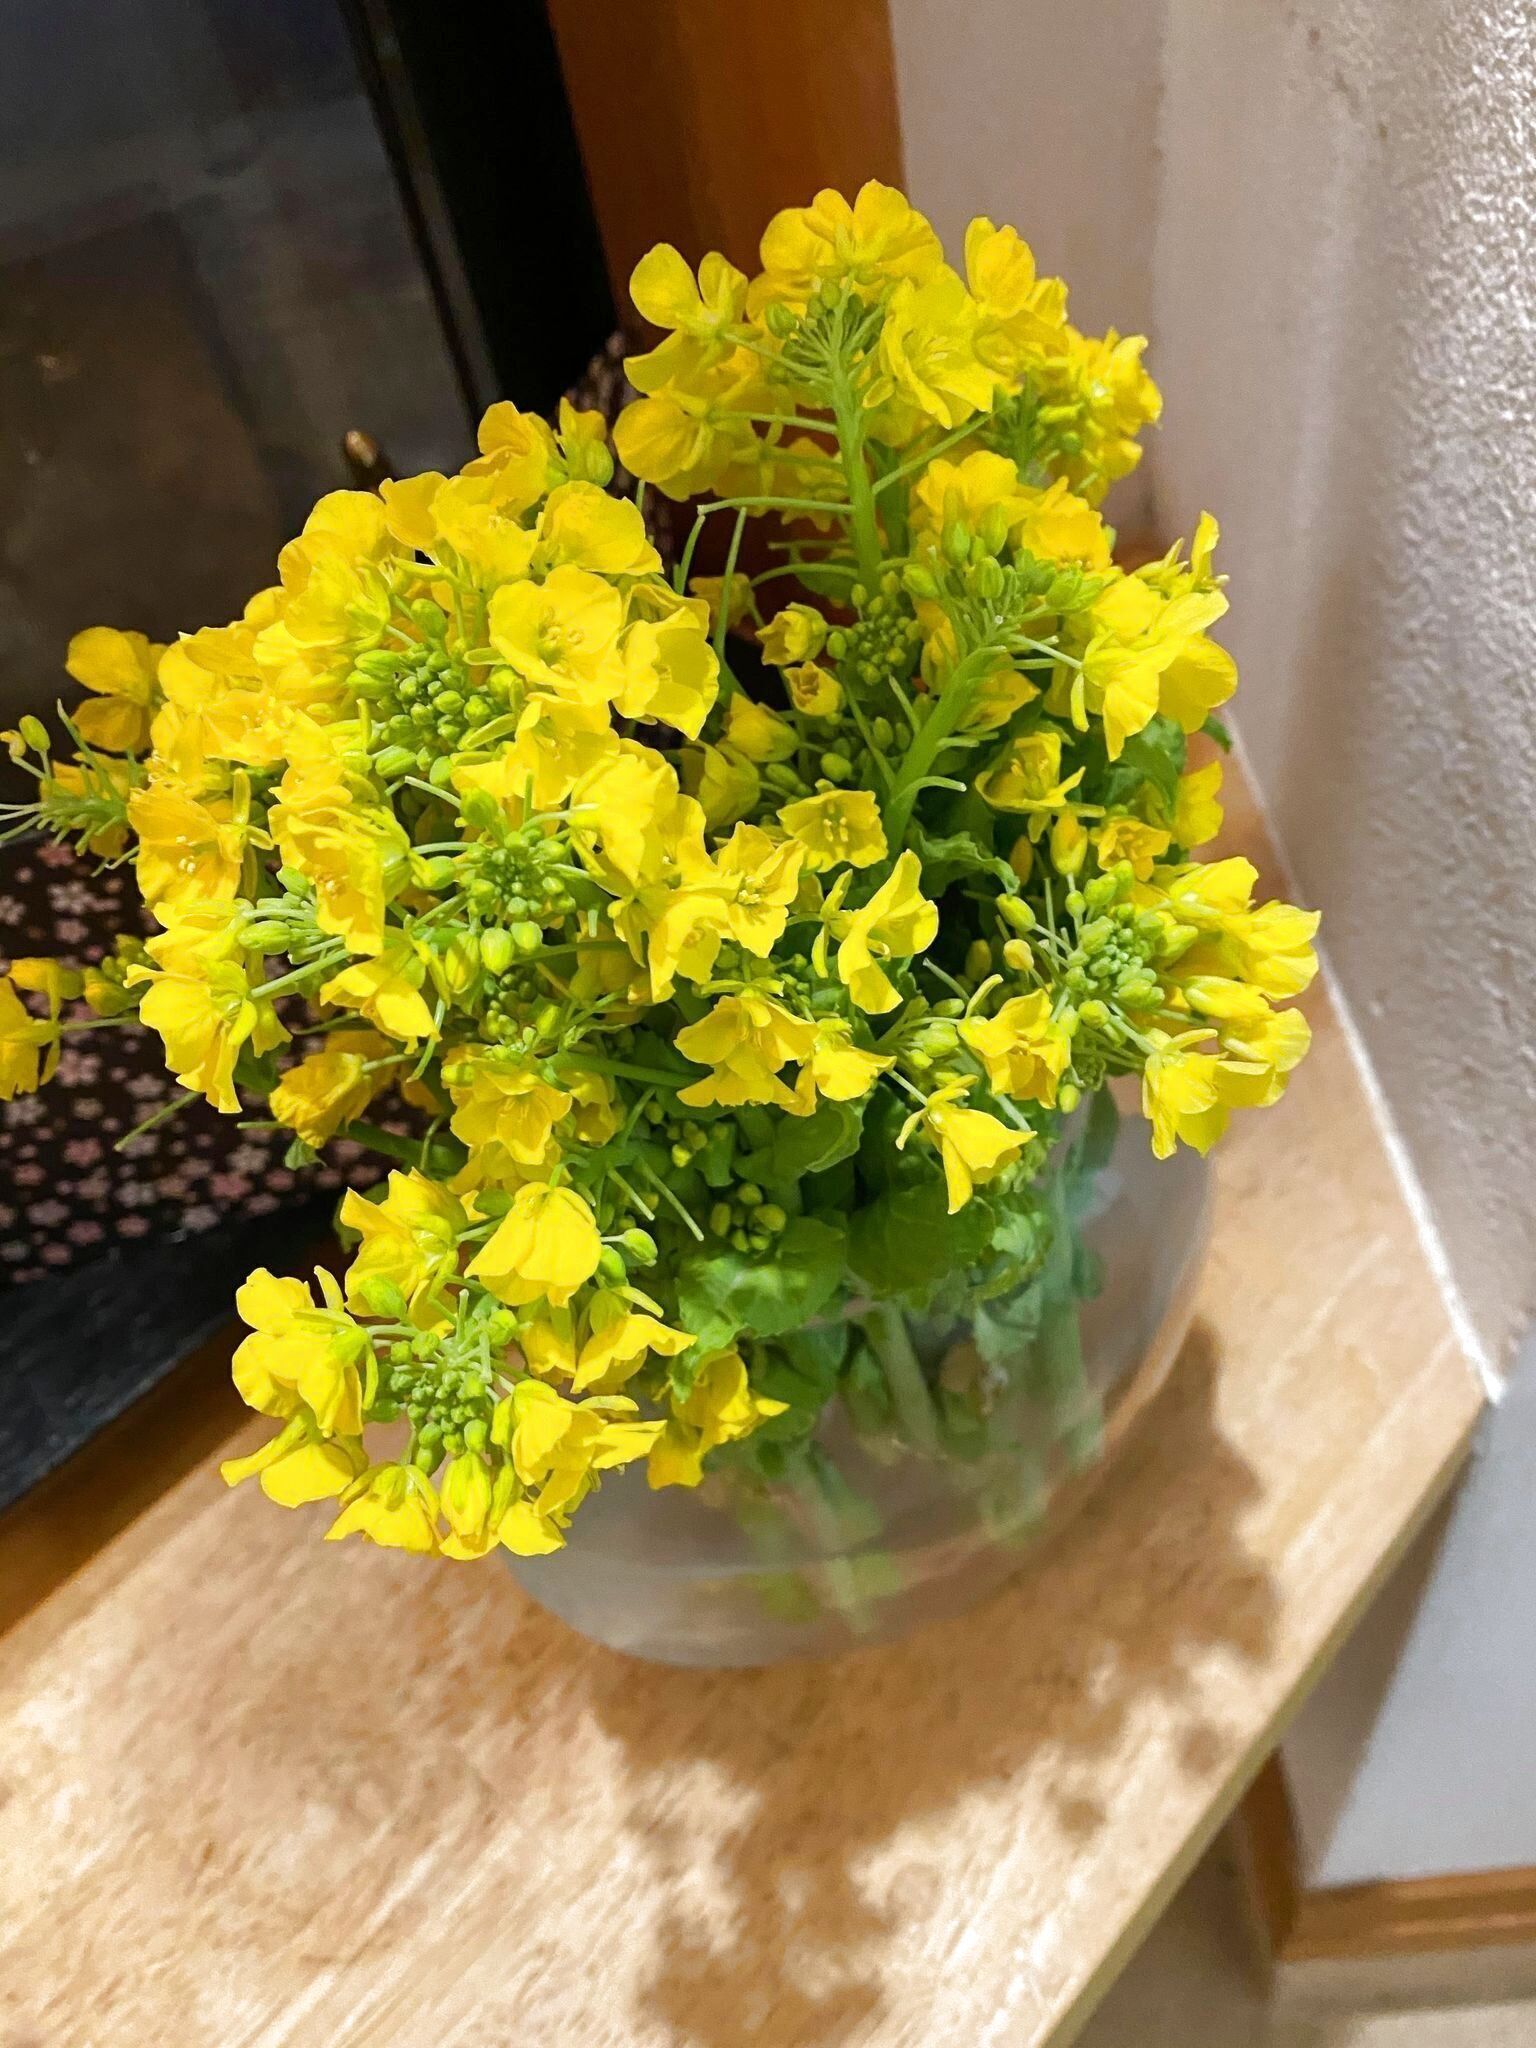 70円の花束 飾るために買う野菜売り場の菜の花 暮らしニスタ